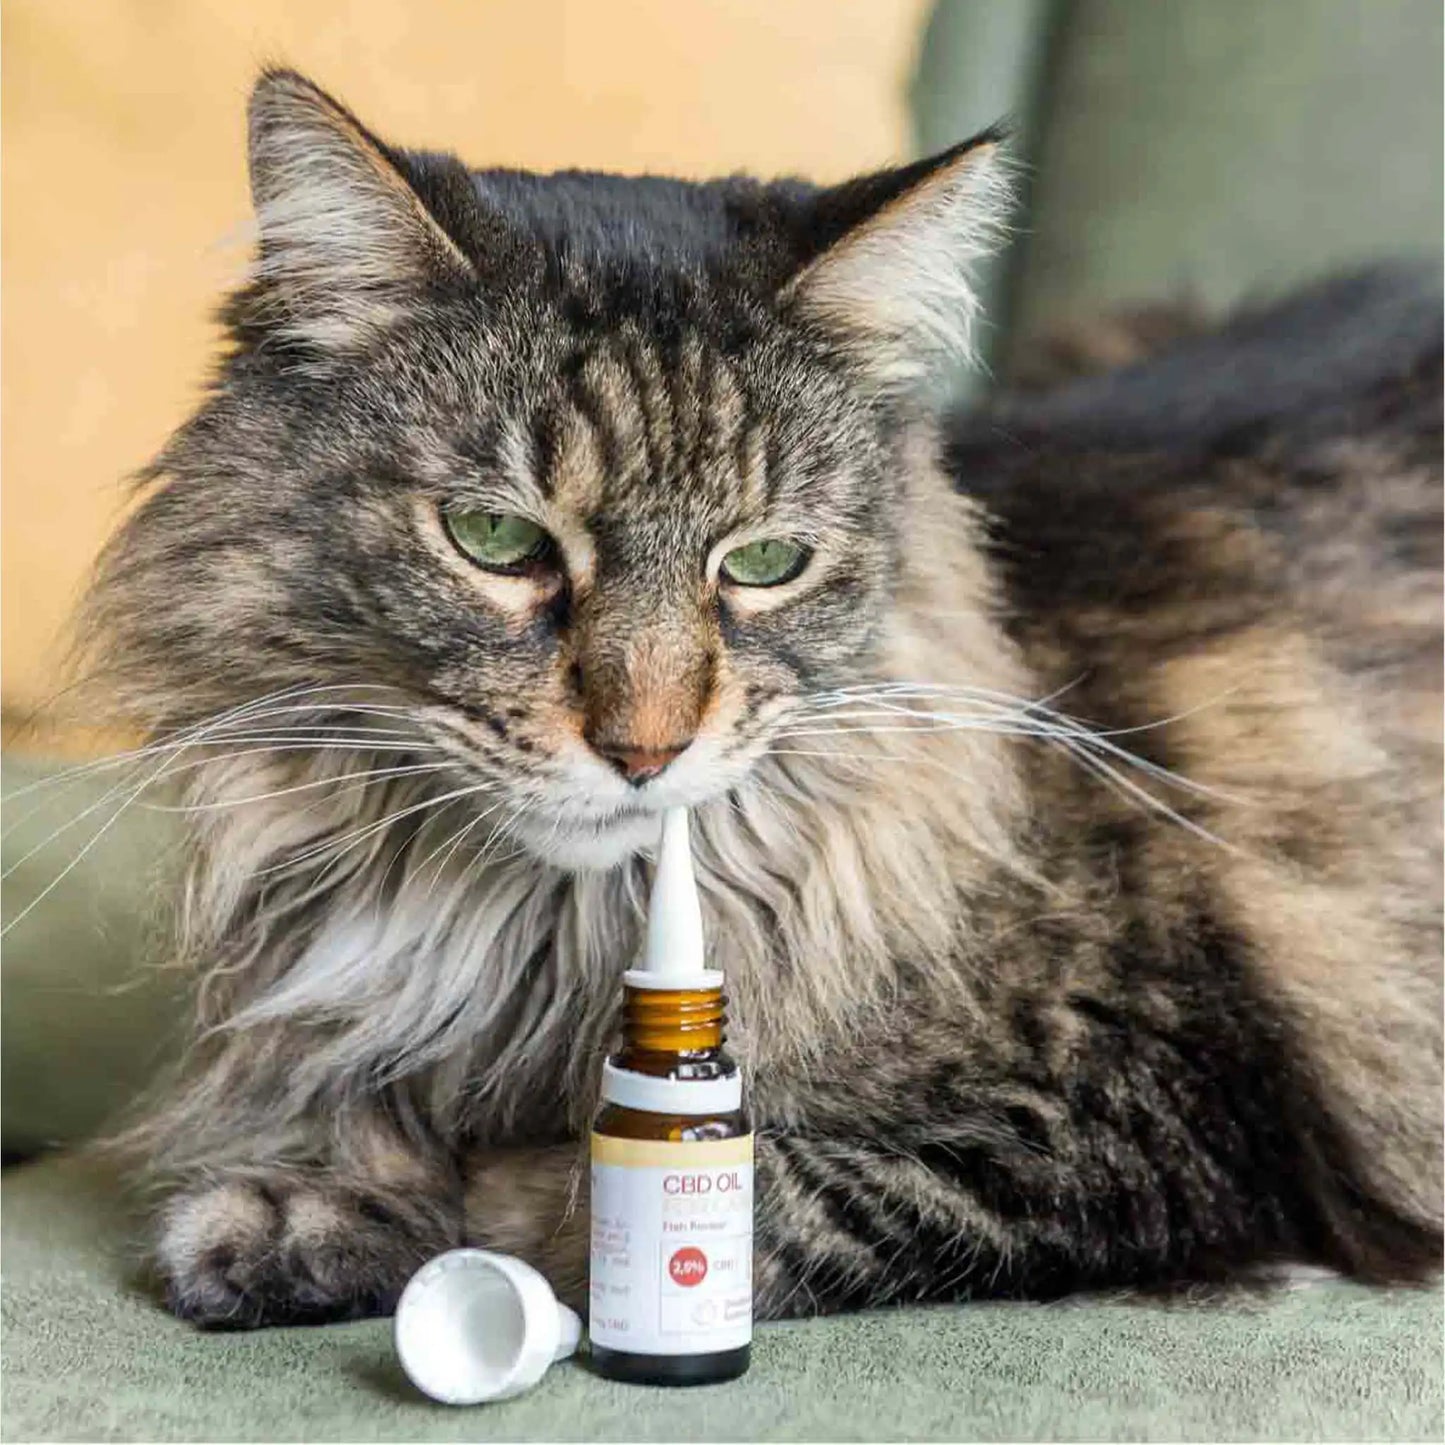 eine brauen Katze richt an der offenen Flasche des CBD Öles während diese auf einem Sofa liegt